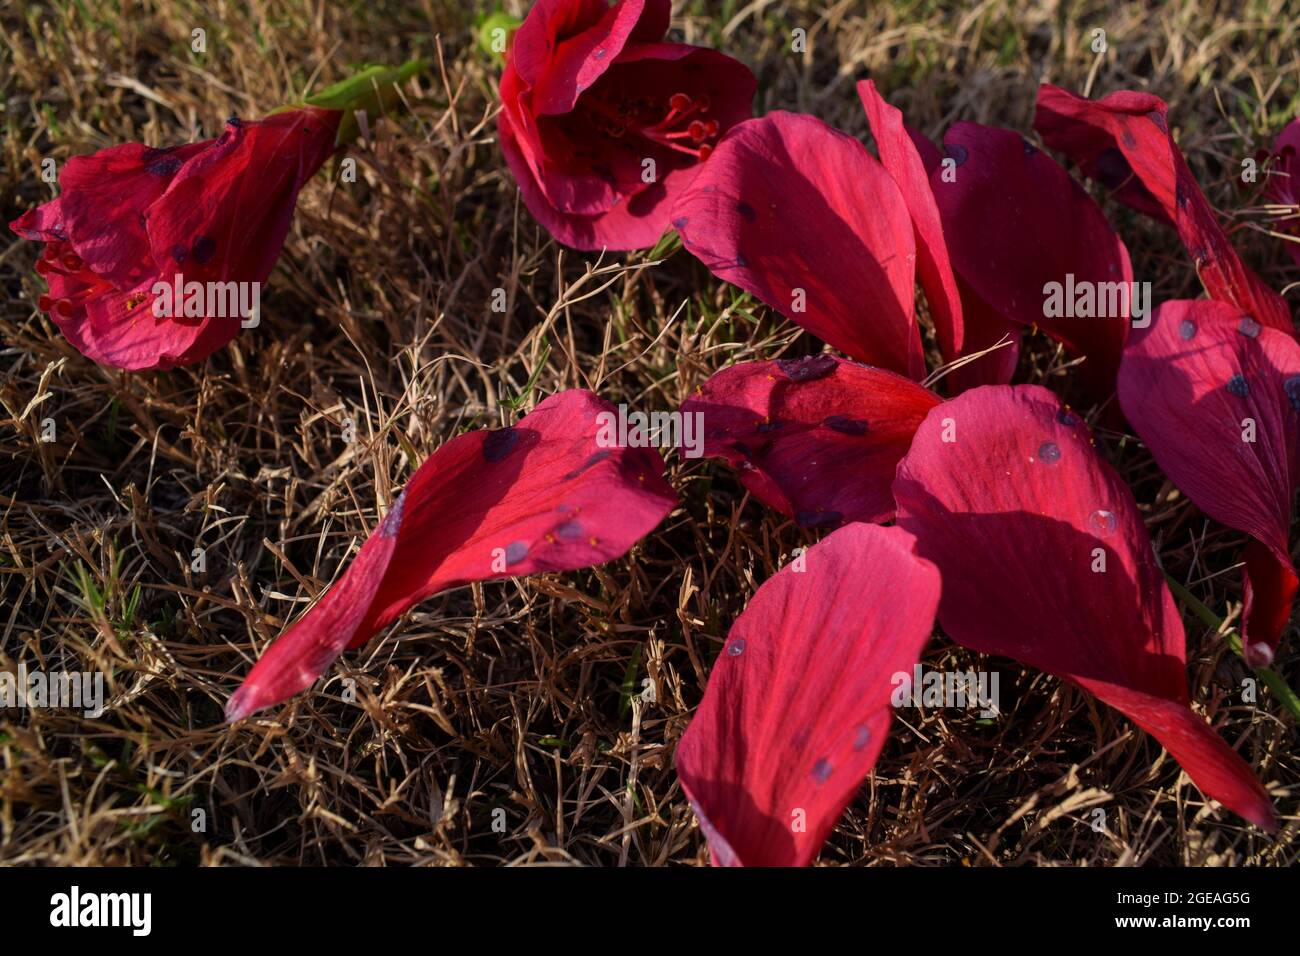 Hibiskus- oder Schuhblütenblätter, die durch Fungizidspray oder Wanzen-Pilz mit schwarzen runden Flecken infiziert sind Stockfoto